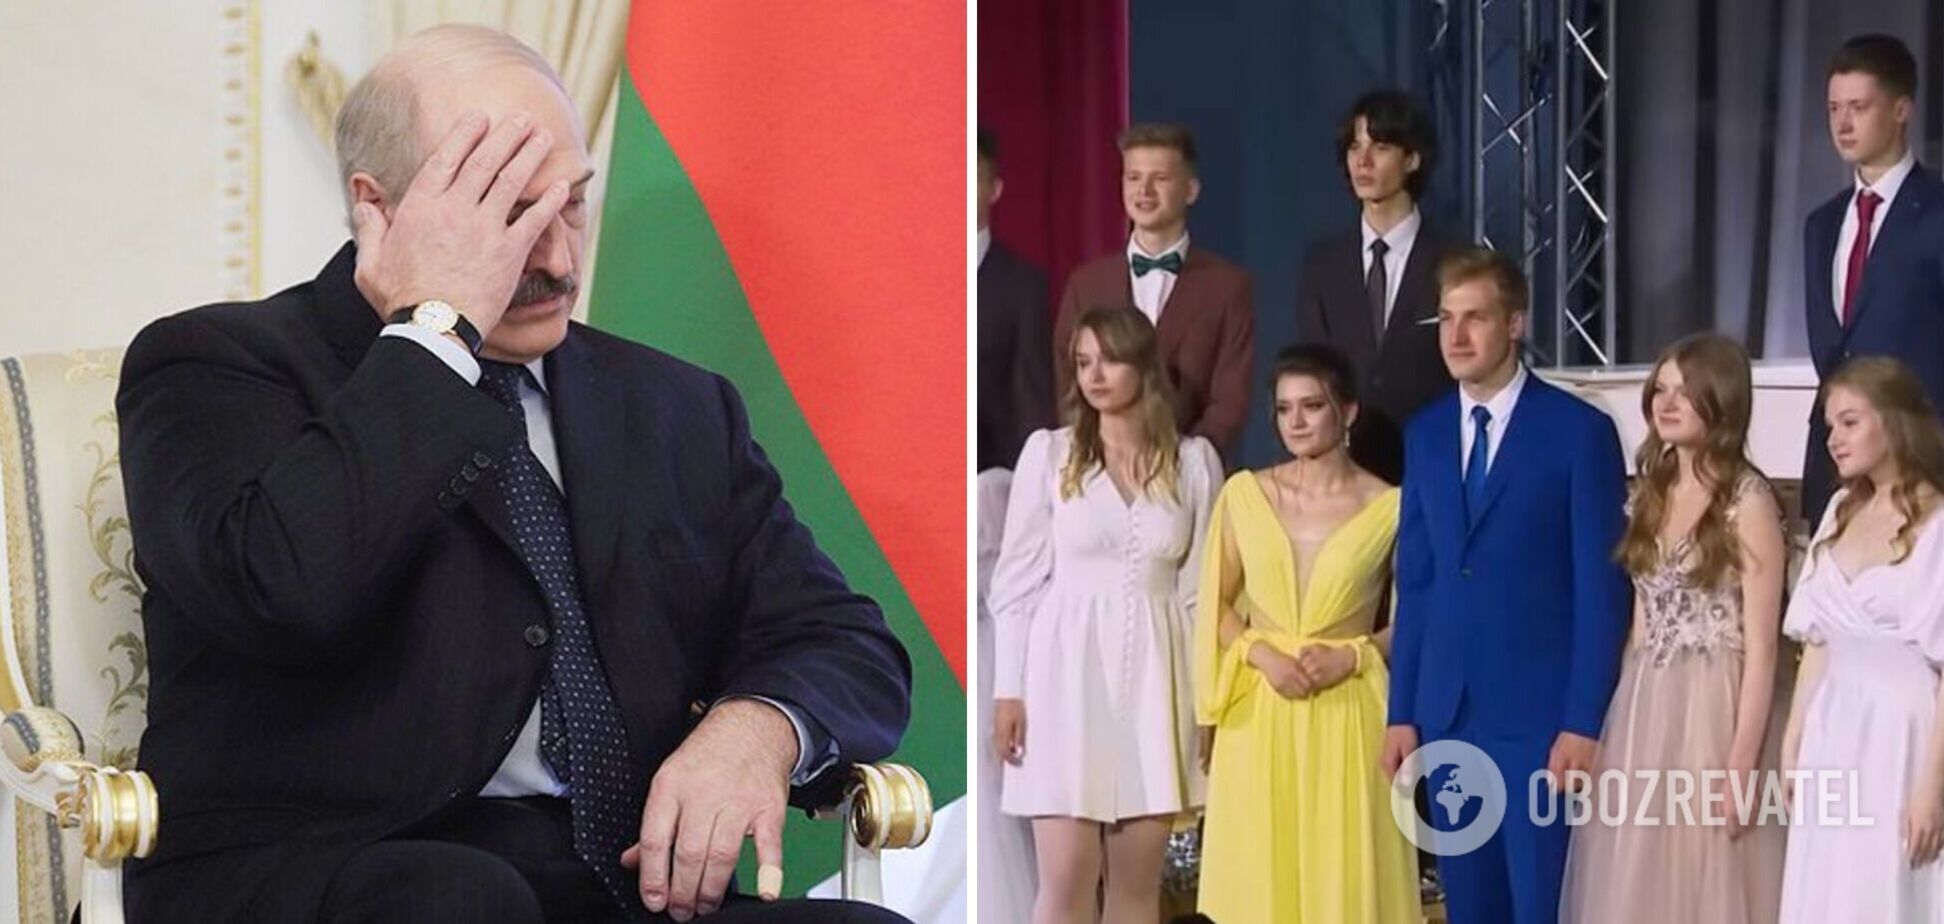 Коля Лукашенко и его одноклассница пришли на выпускной в наряде в цветах флага Украины. Фото